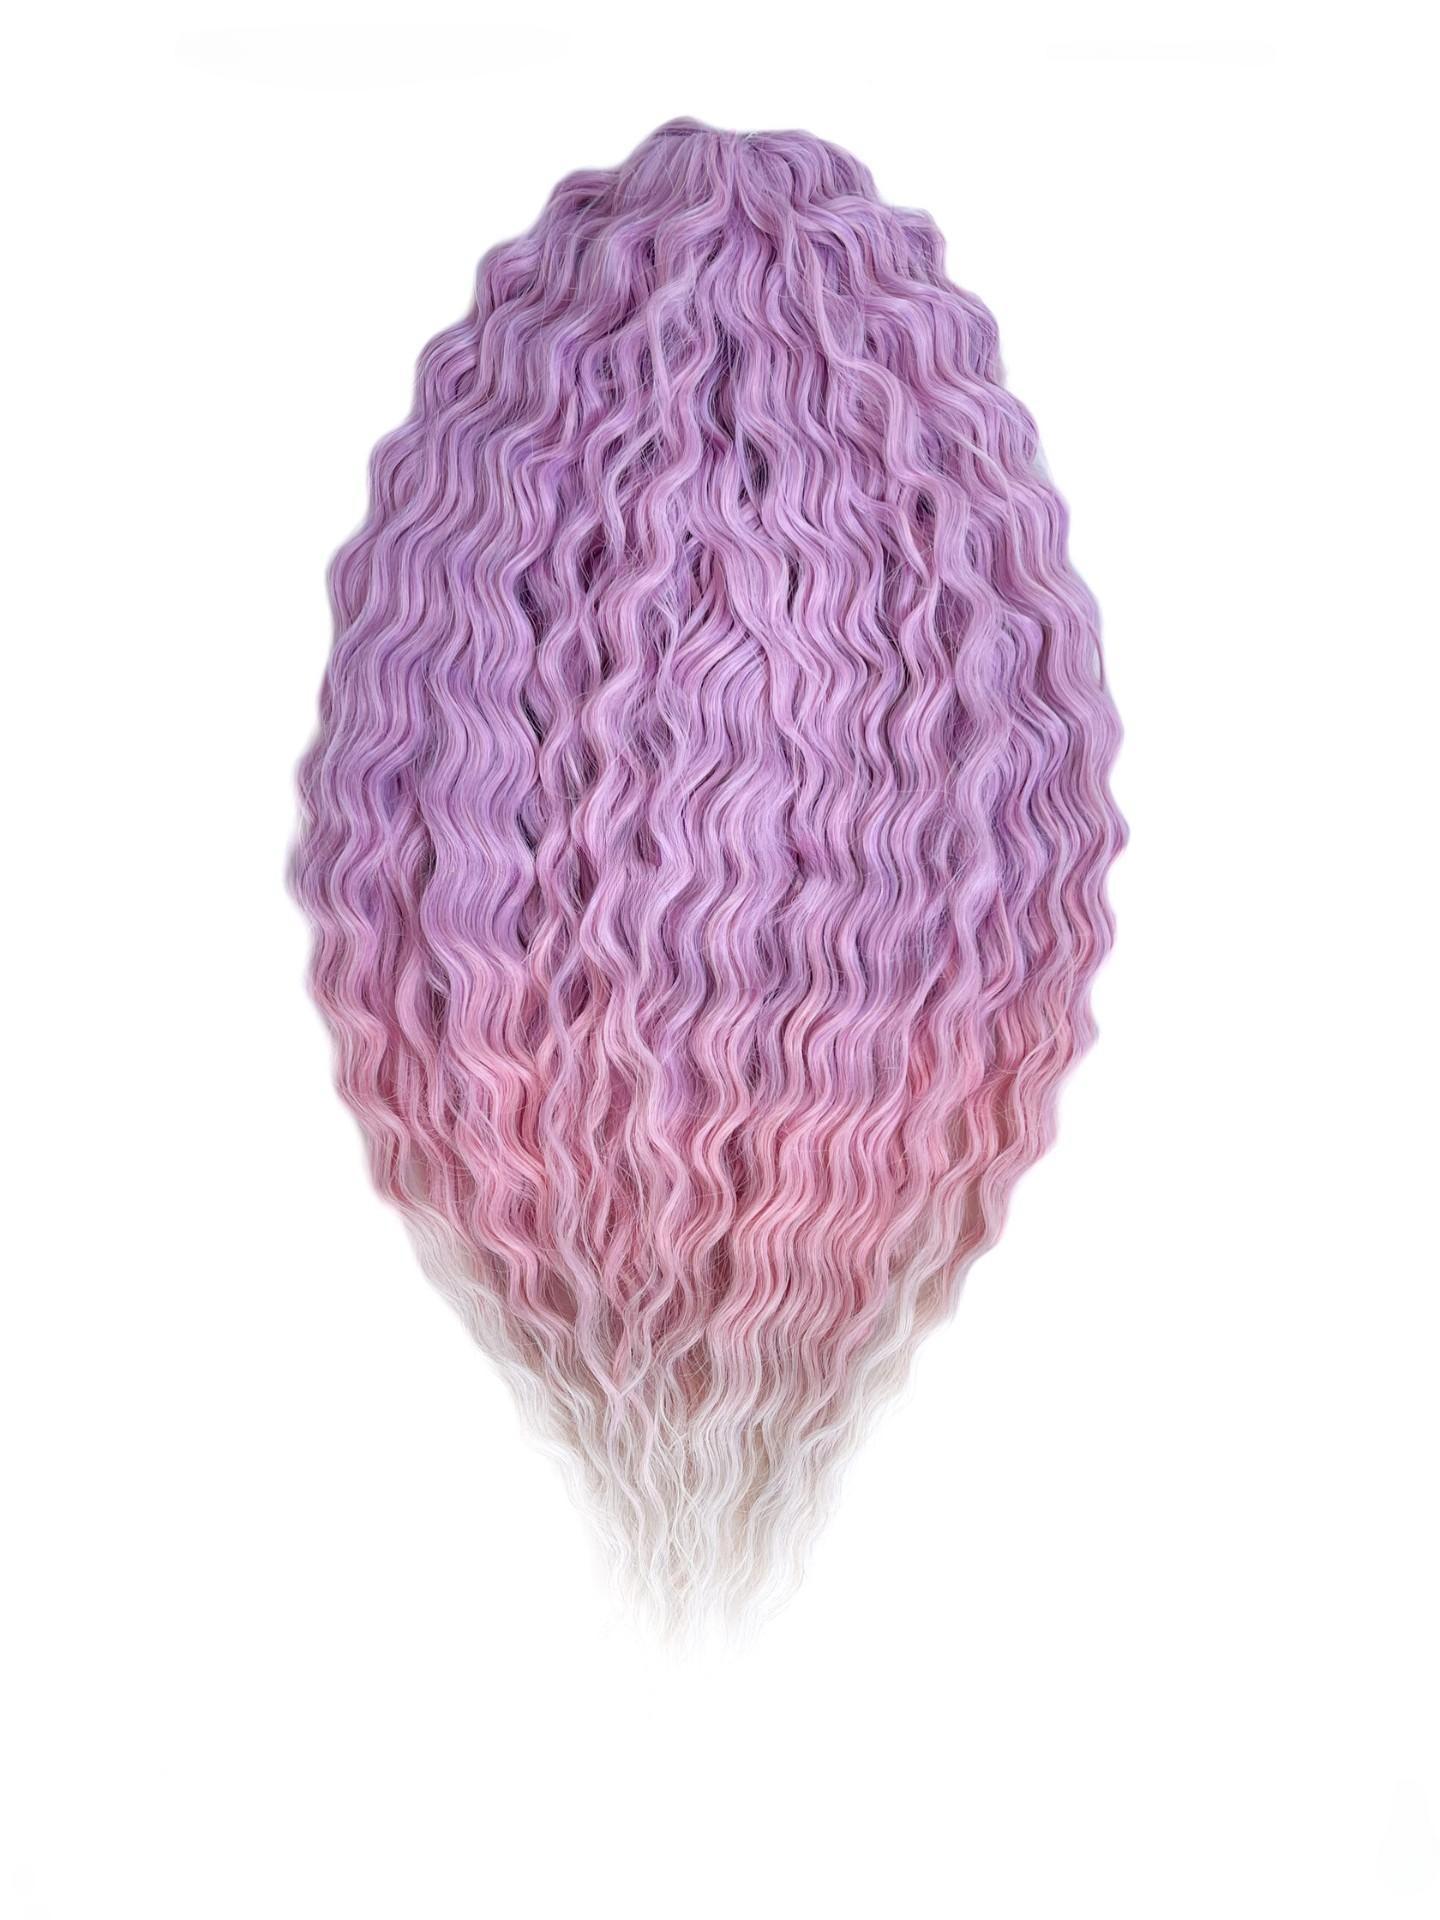 Афрокудри для плетения волос Ariel Ариэль цвет PPG3 длина 60см вес 300г афрокудри для плетения волос ariel ариэль fire оранжевый длина 66см вес 300г